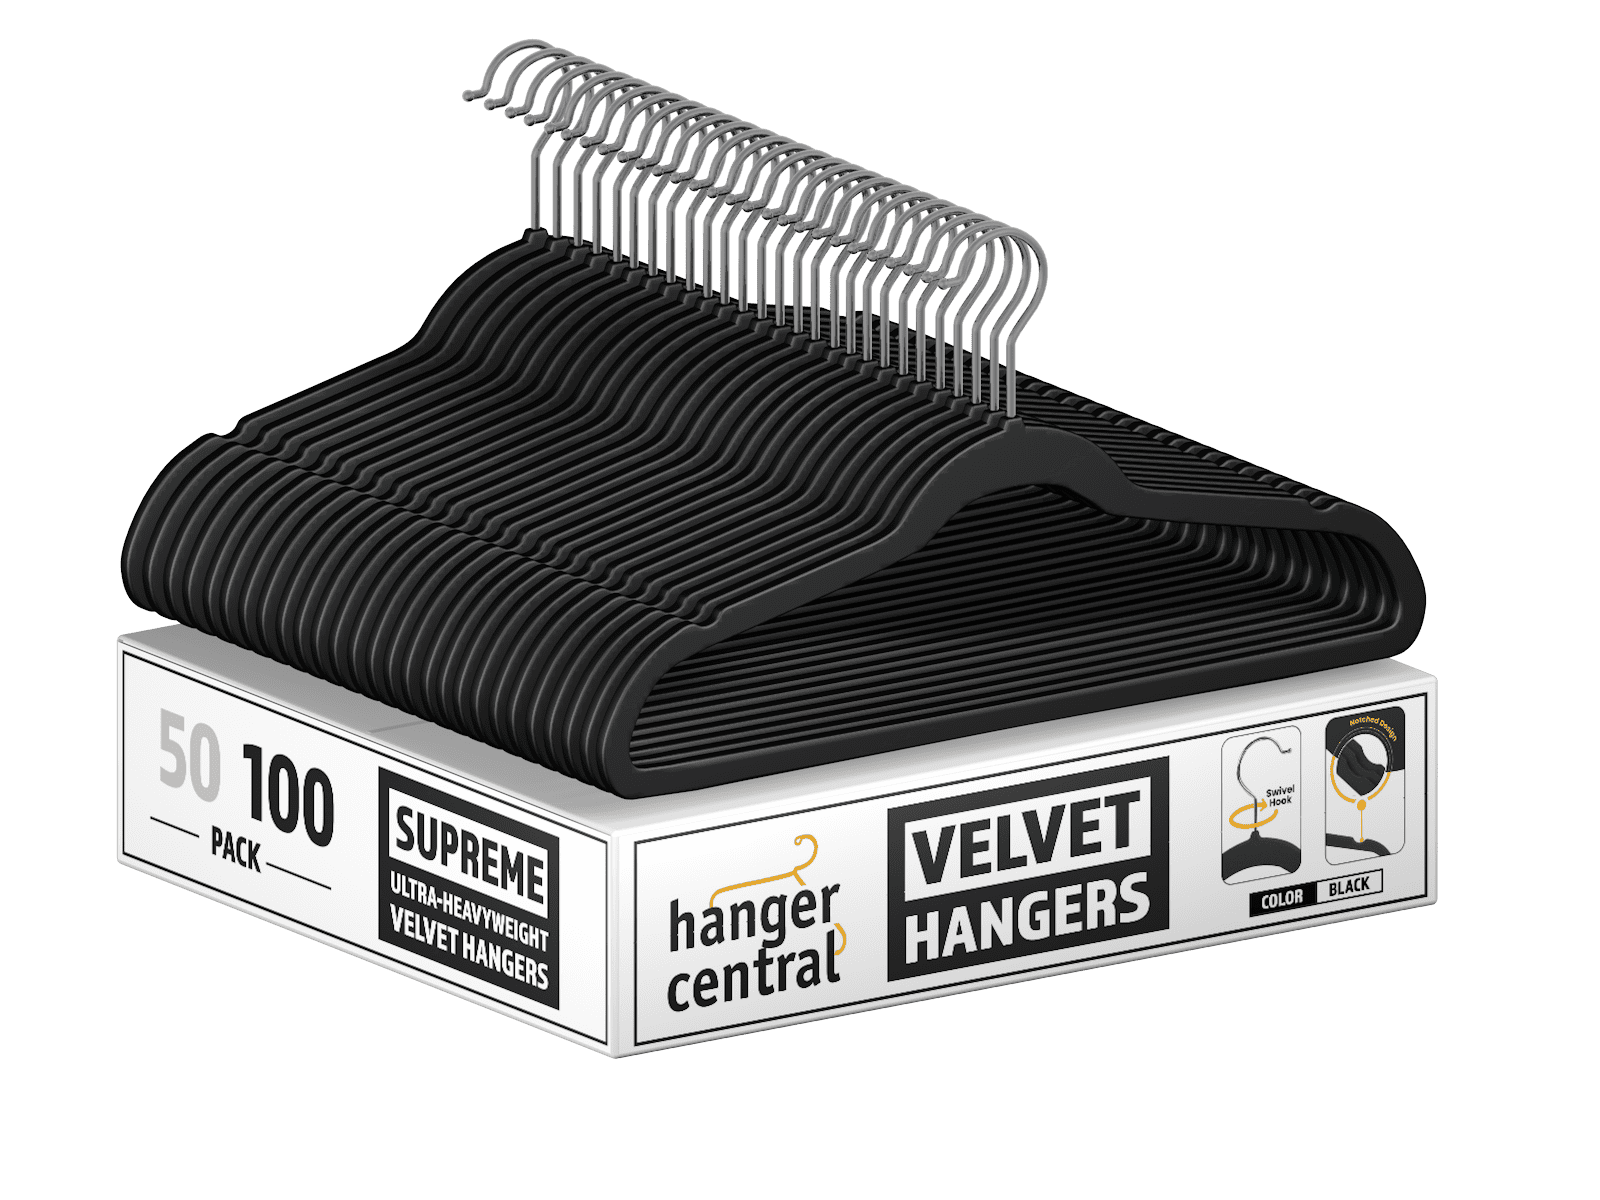 Member's Mark 50 Pack Elite Quality Velvet Hangers - Black